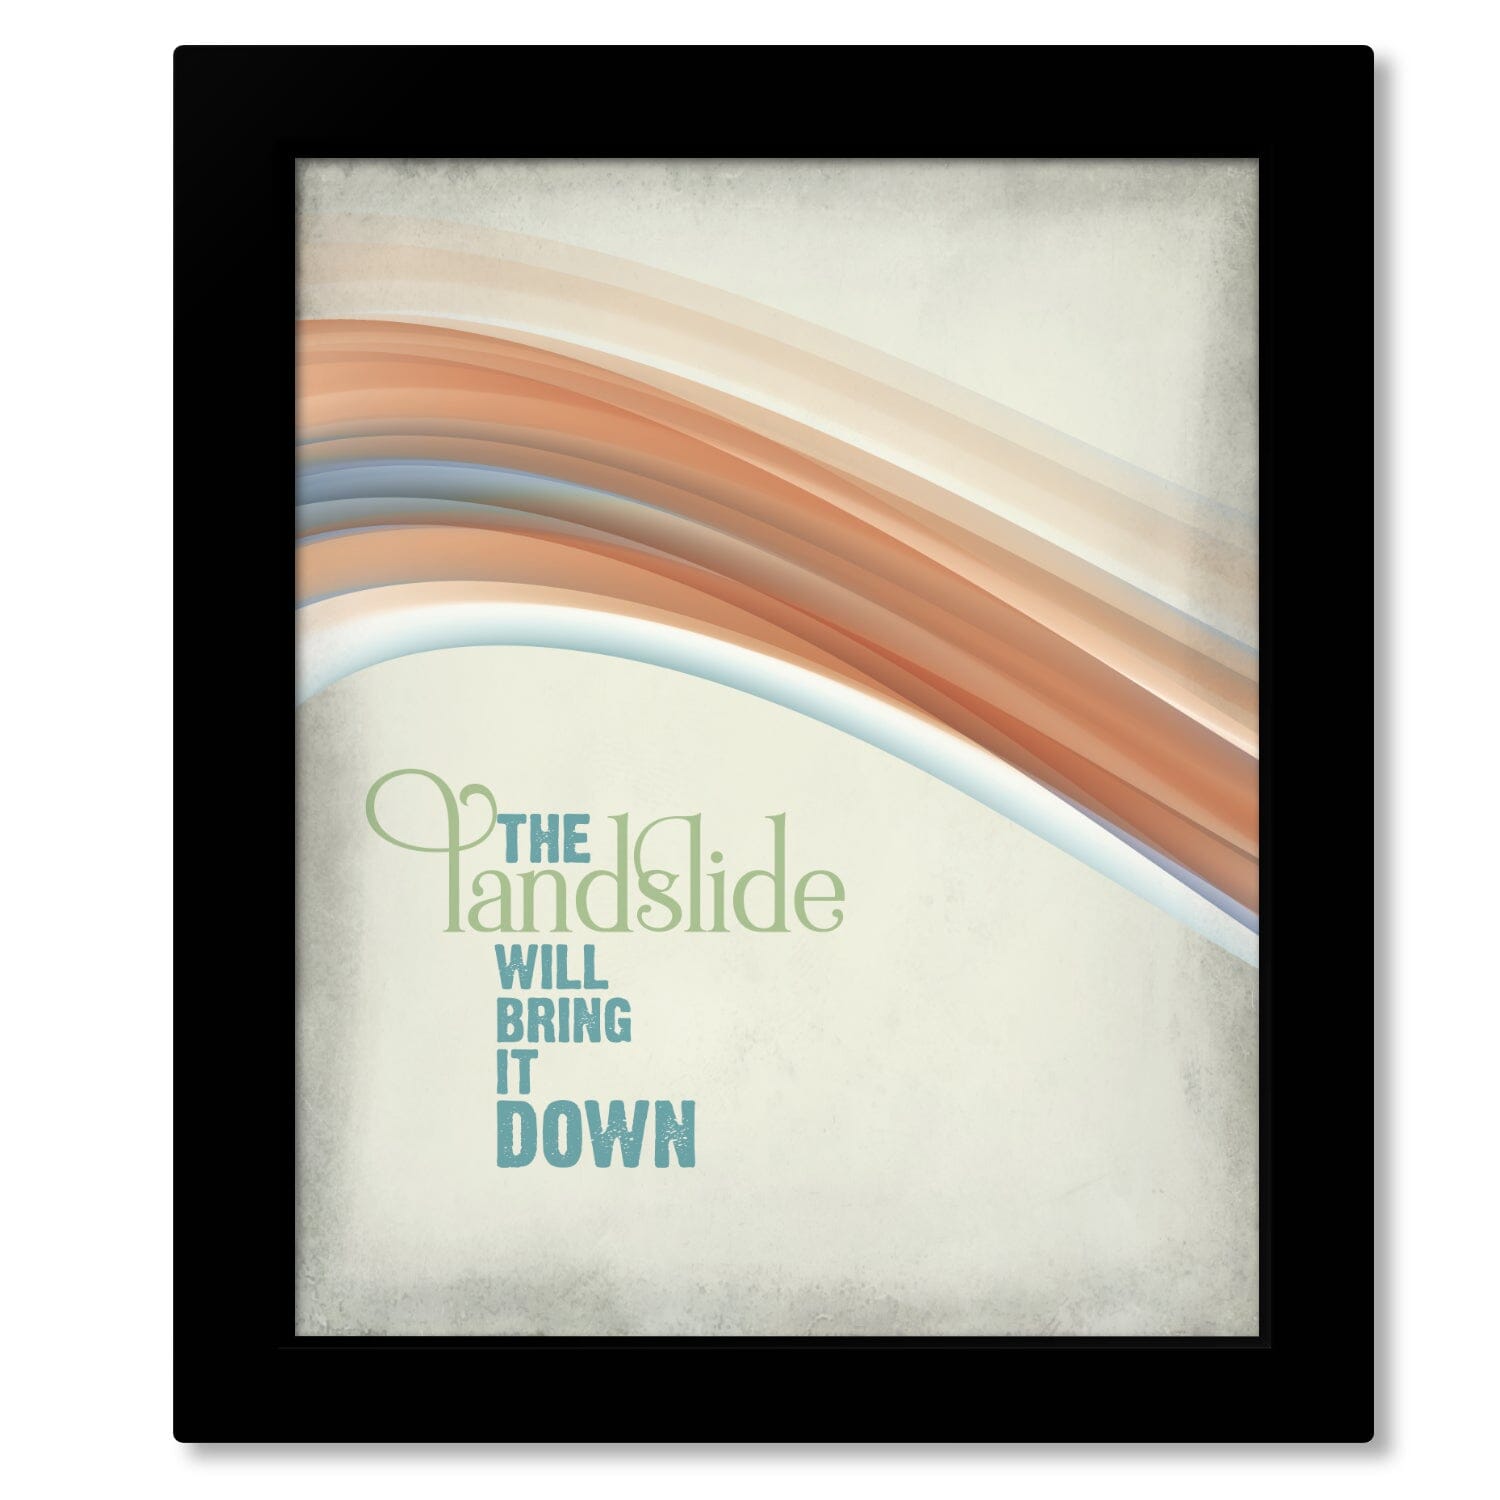 Landslide by Fleetwood Mac - Classic Rock Music Wall Print Song Lyrics Art Song Lyrics Art 8x10 Framed Print (without mat) 